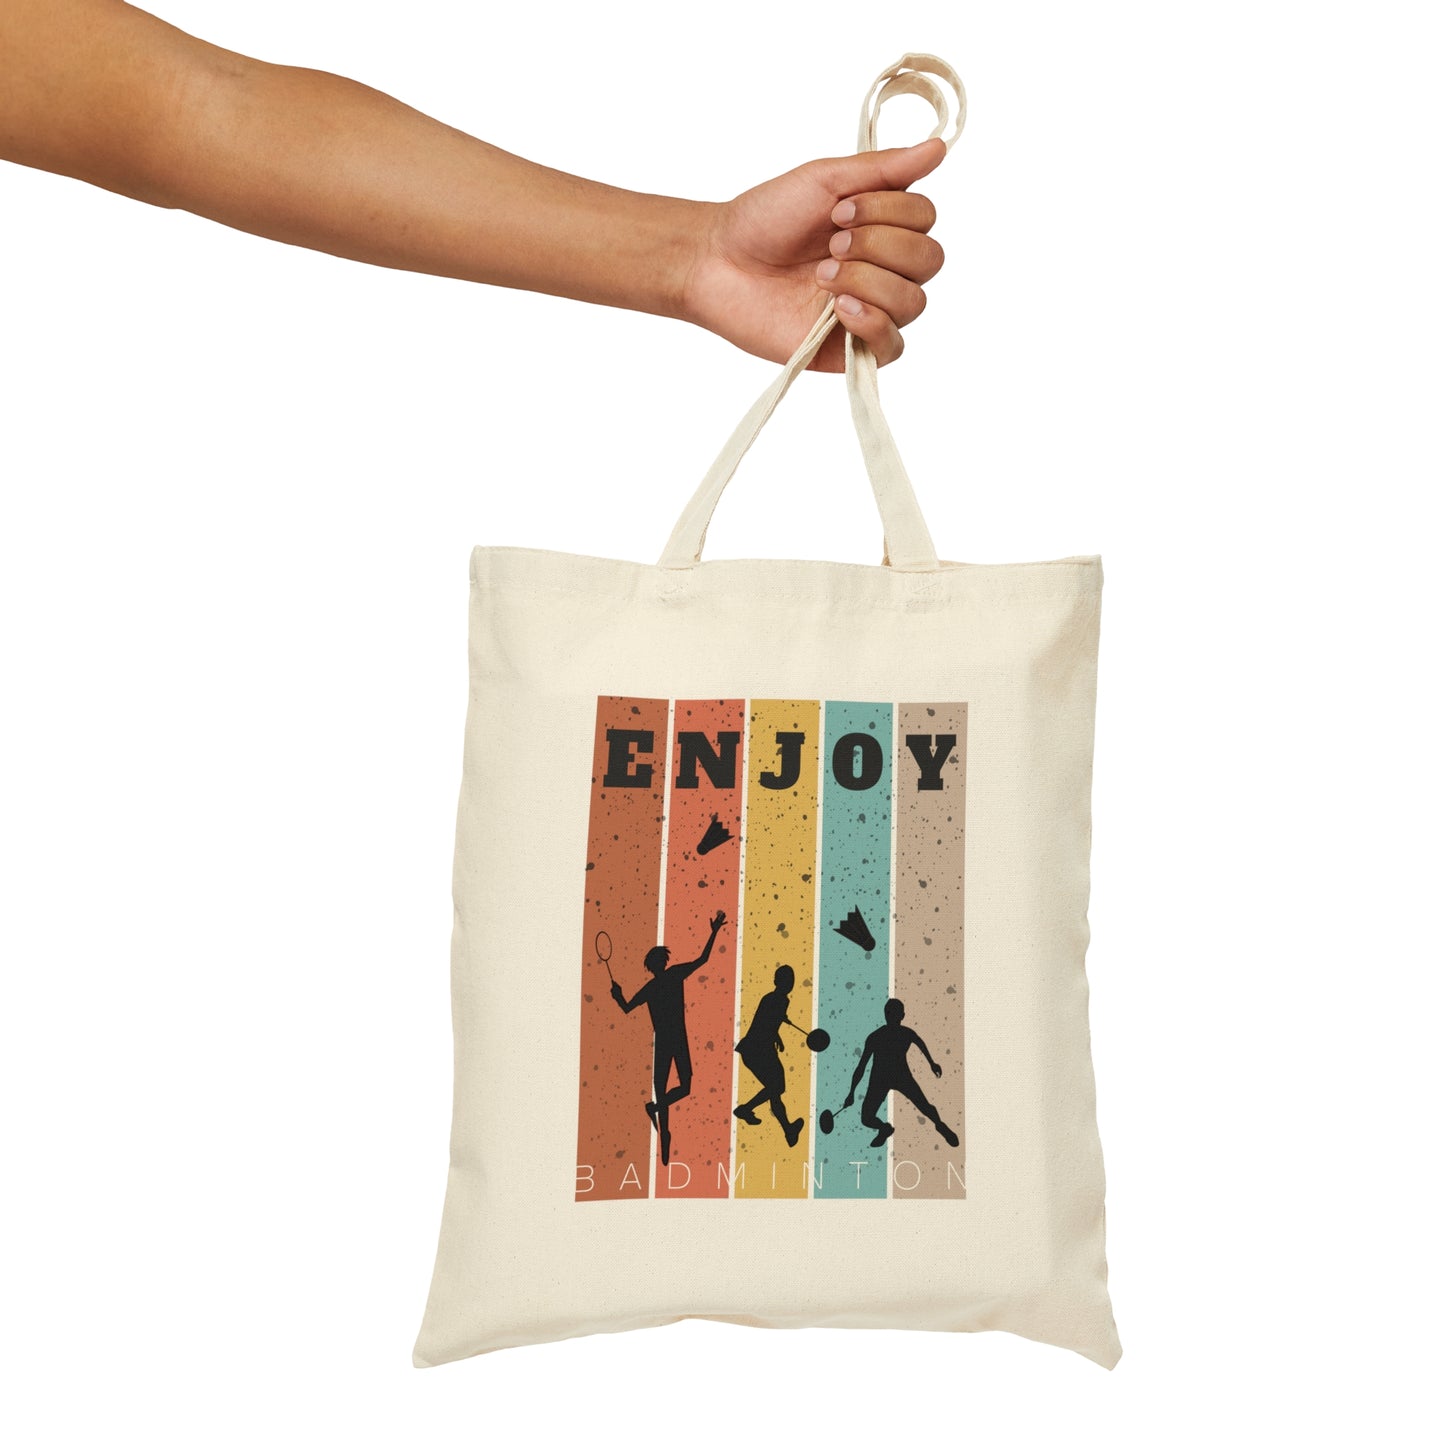 Enjoy Badminton Canvas Tote Bag